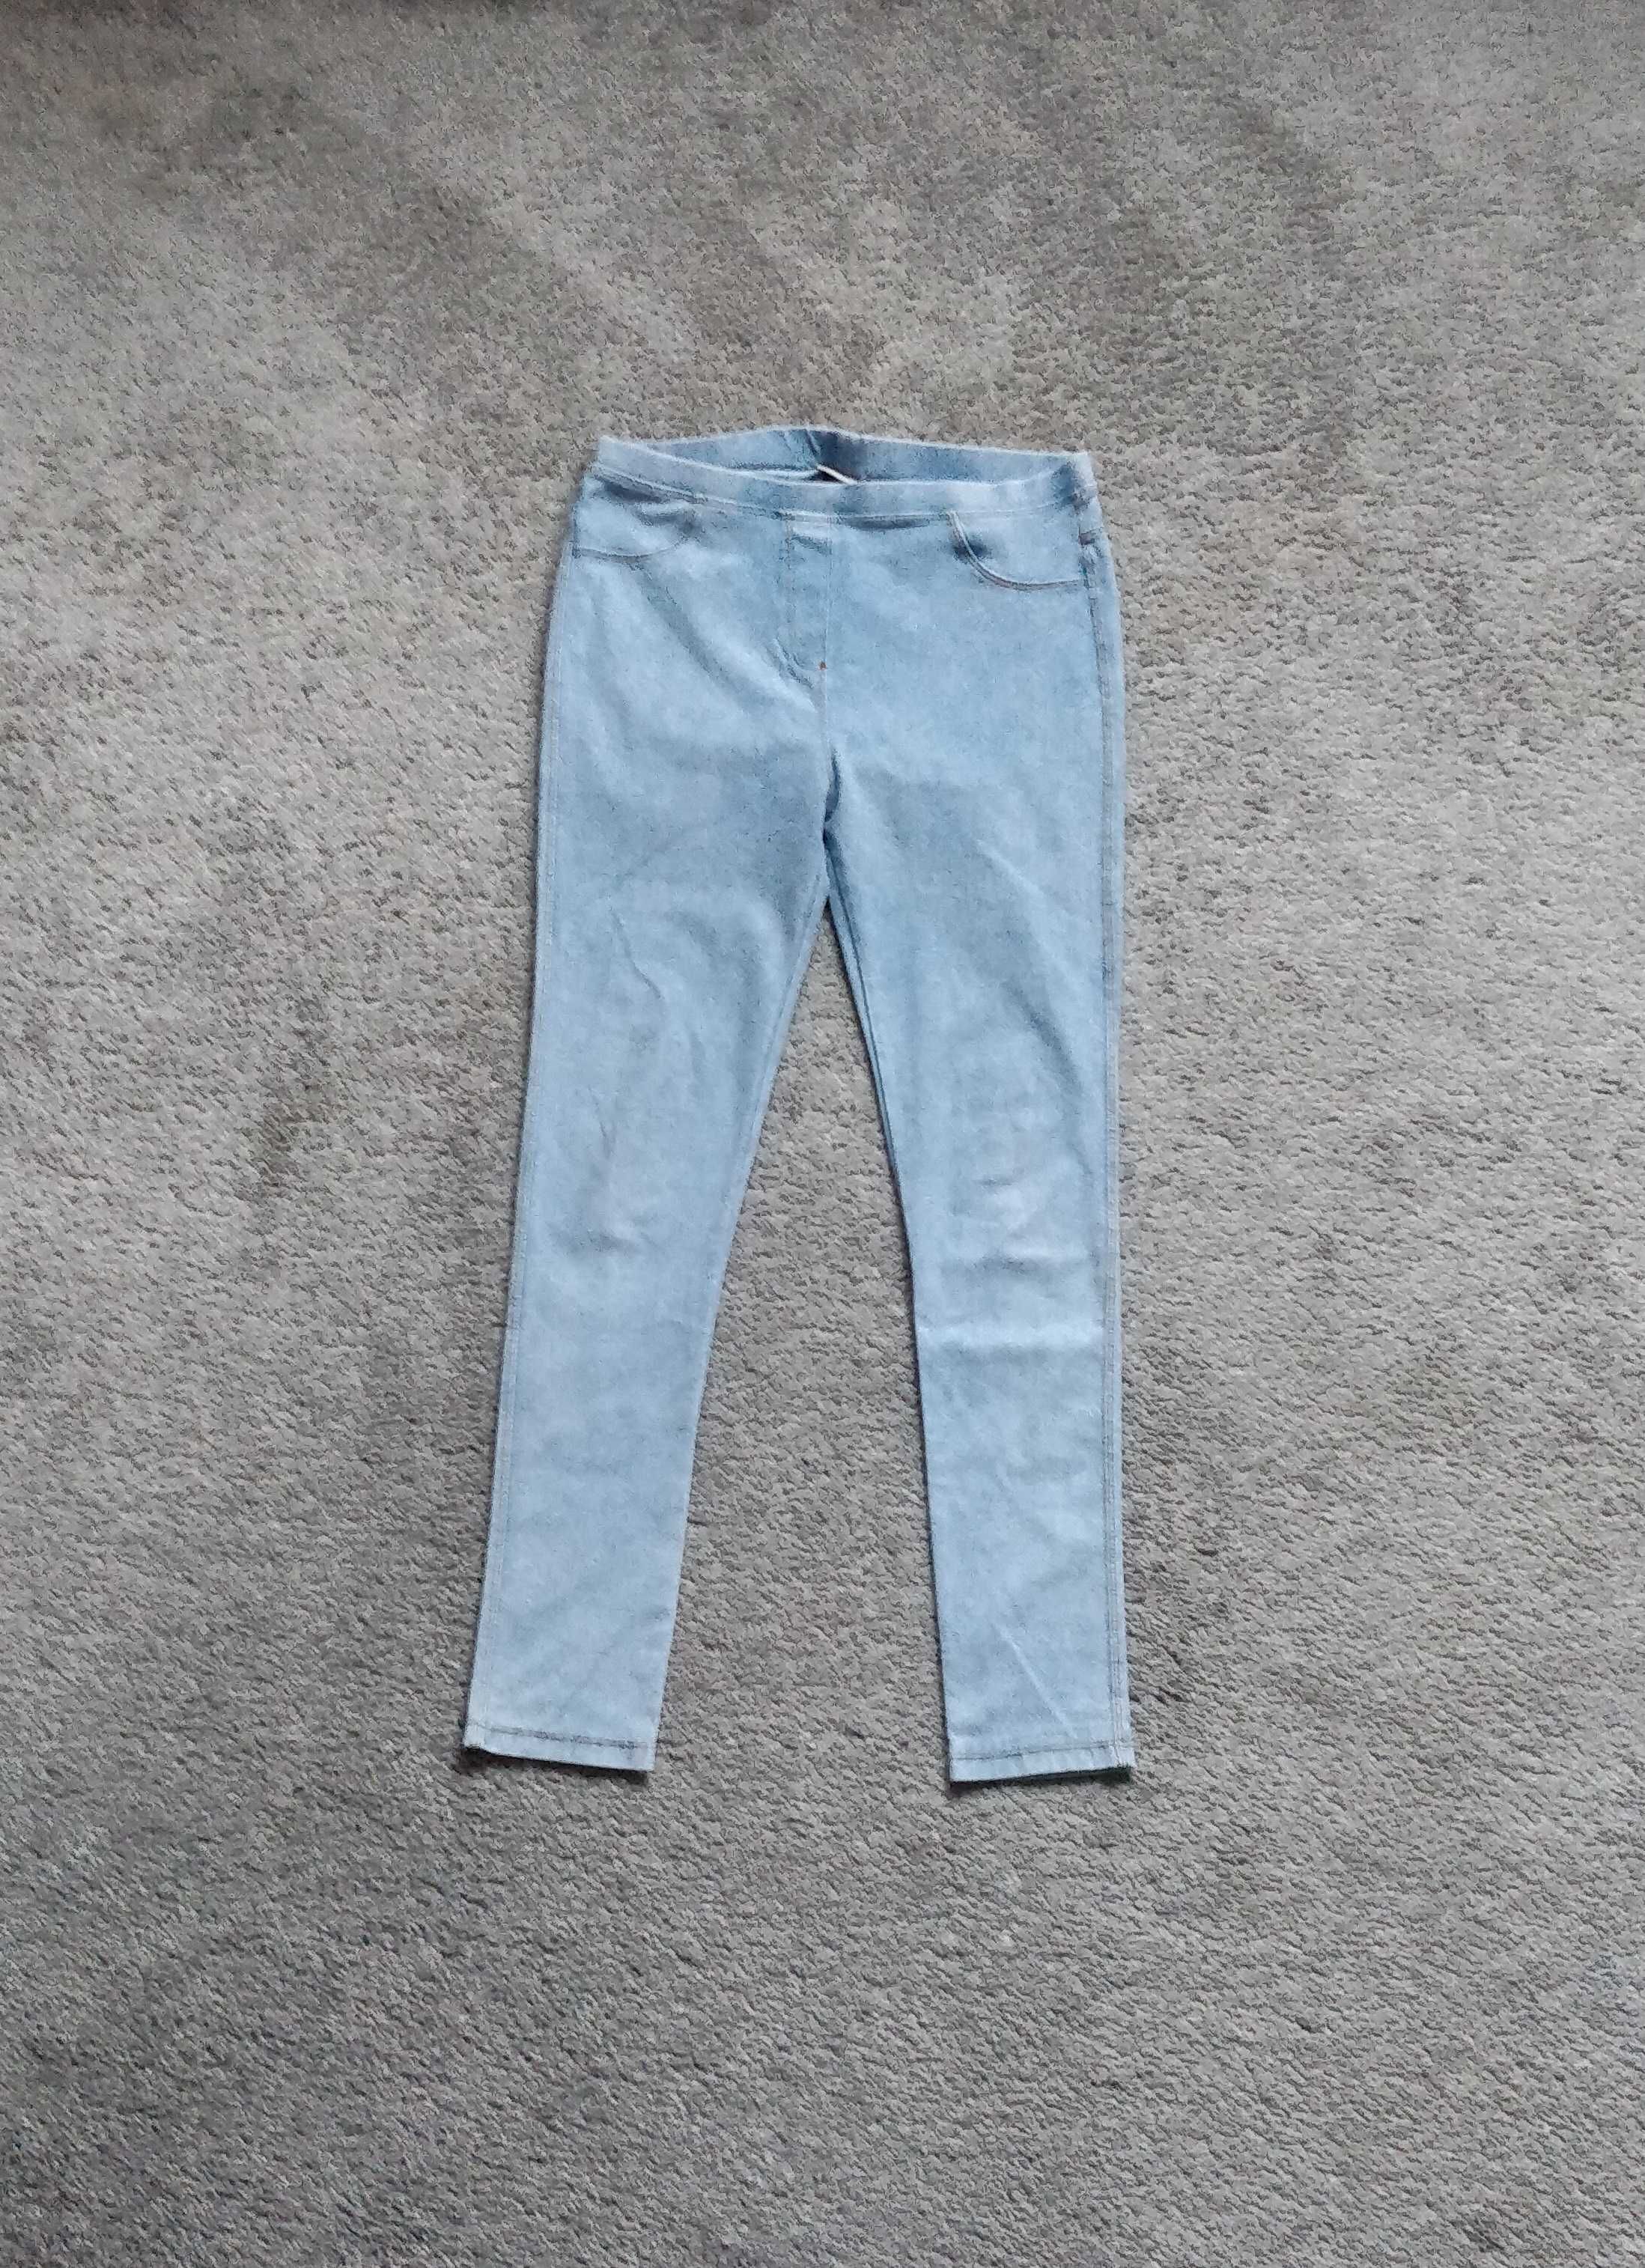 Spodnie jeansowe Zara, rozmiar 164cm, 13 – 14 lat, dziewczęce, skinny.